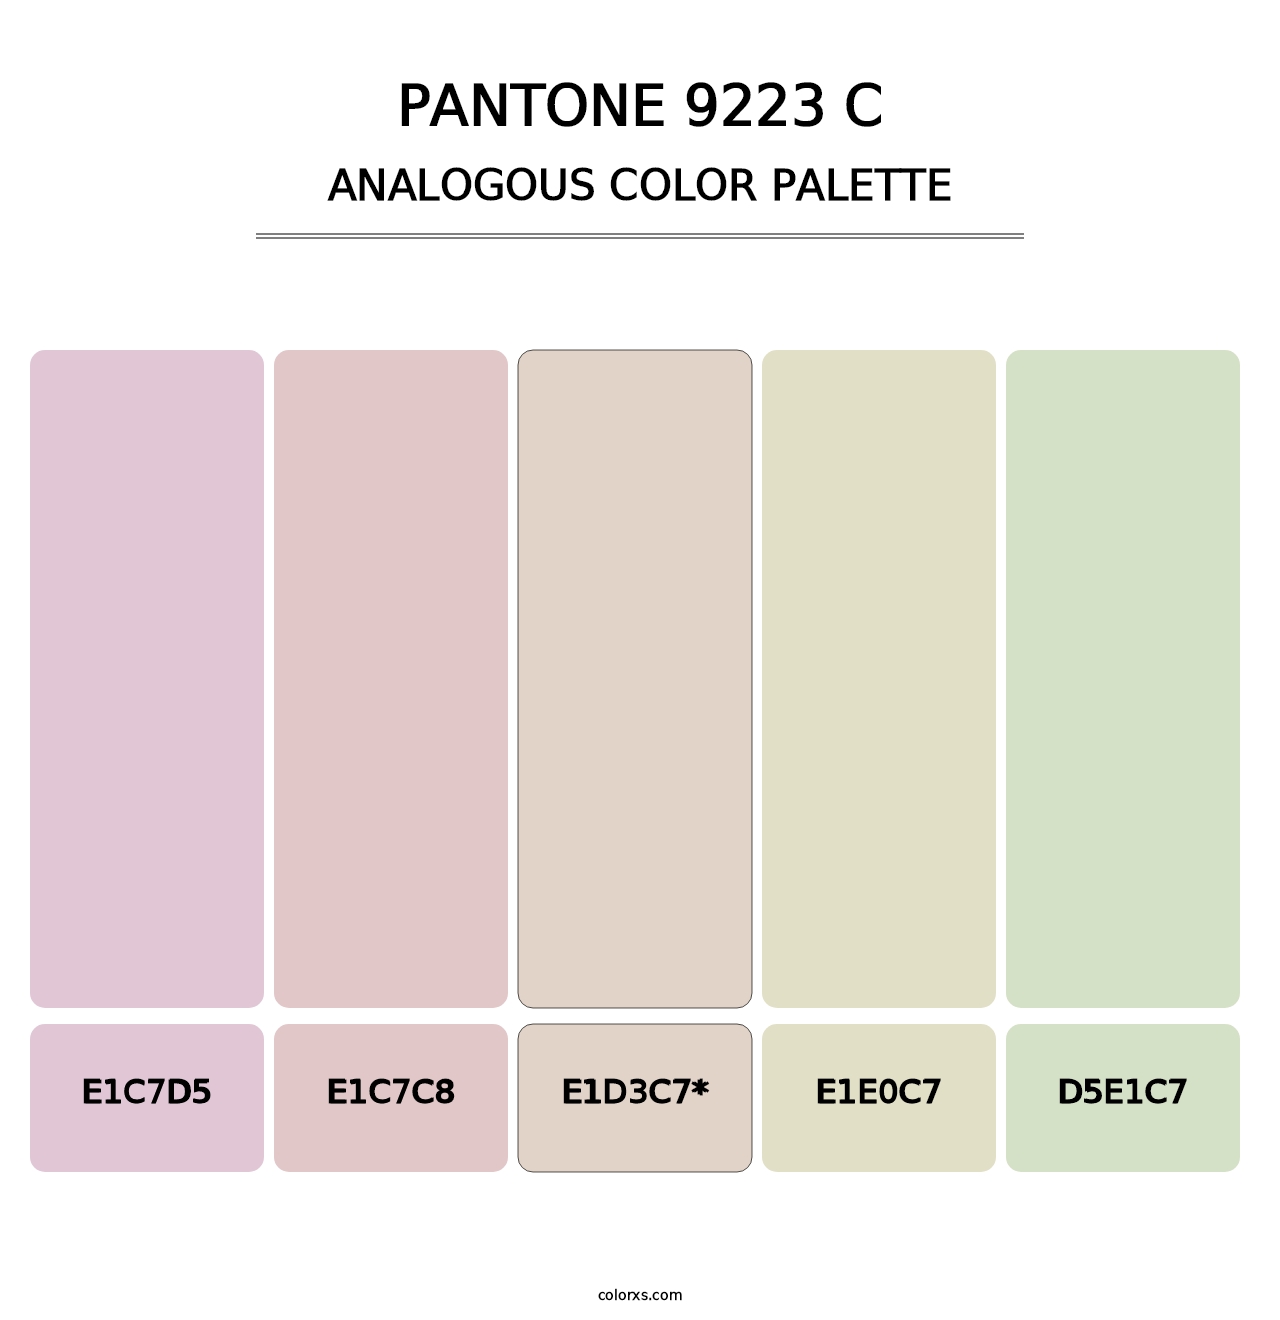 PANTONE 9223 C - Analogous Color Palette